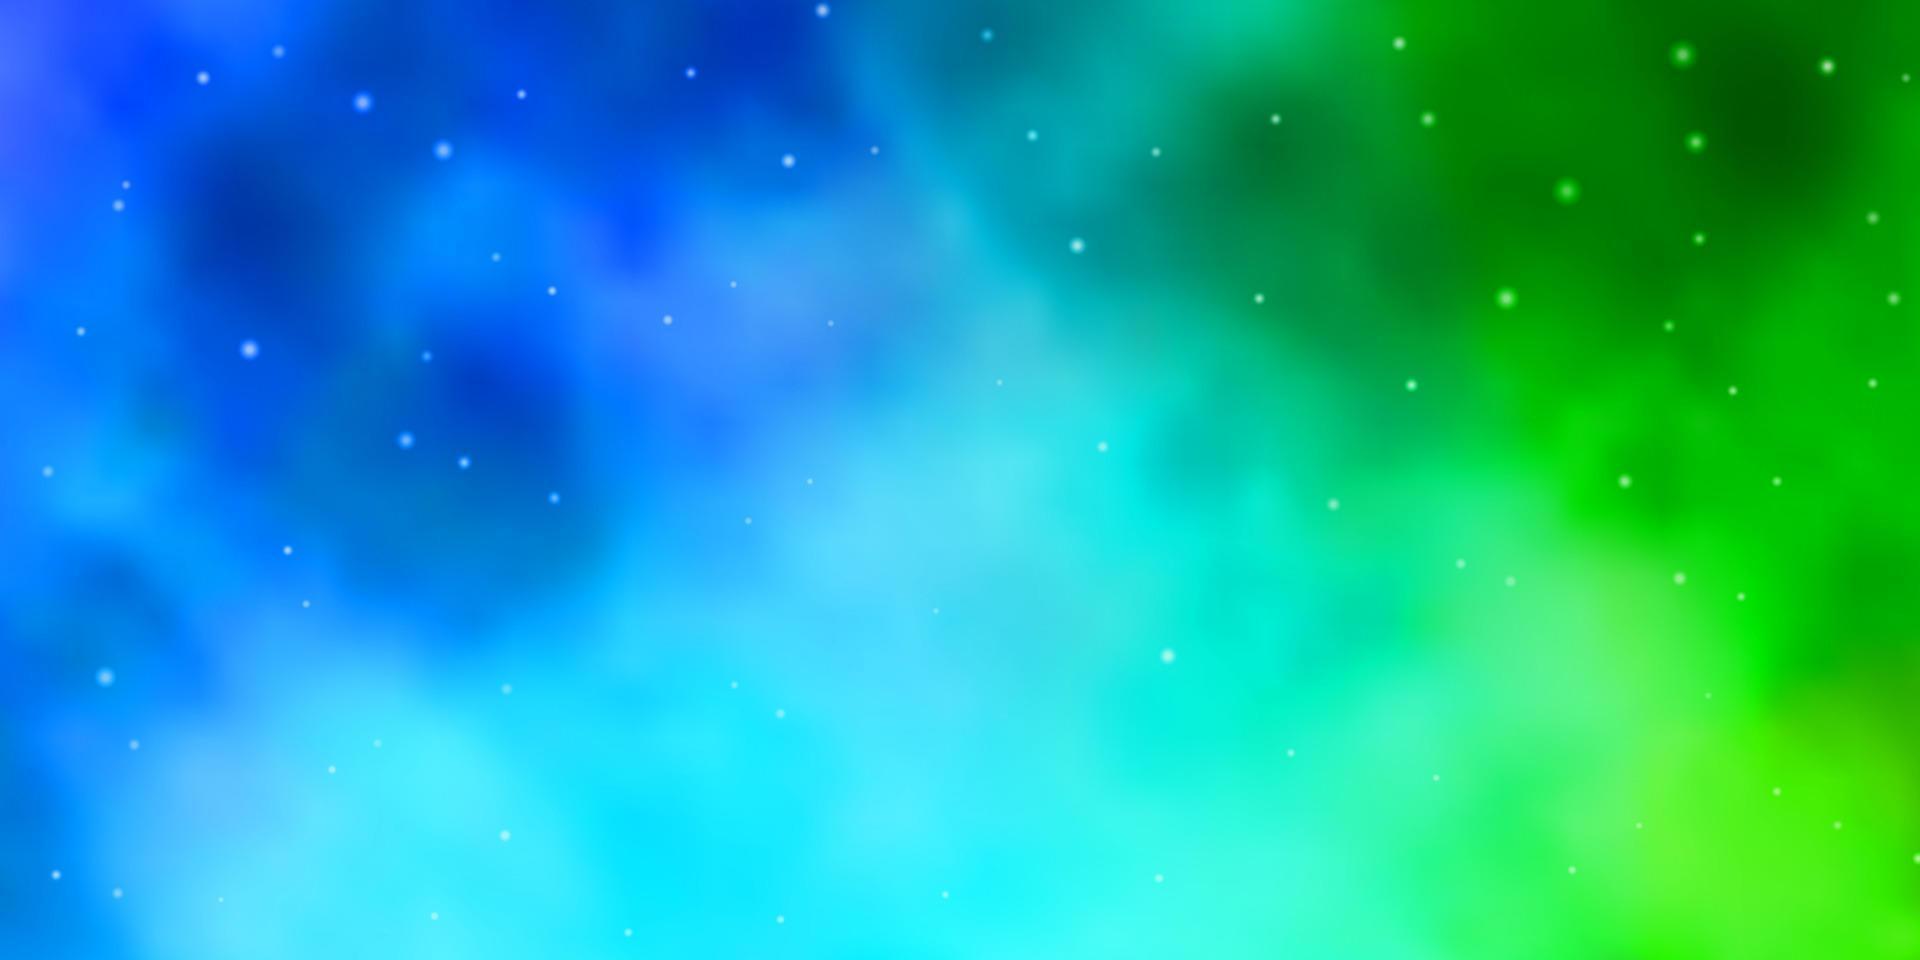 ljusblå, grön vektorlayout med ljusa stjärnor. vektor